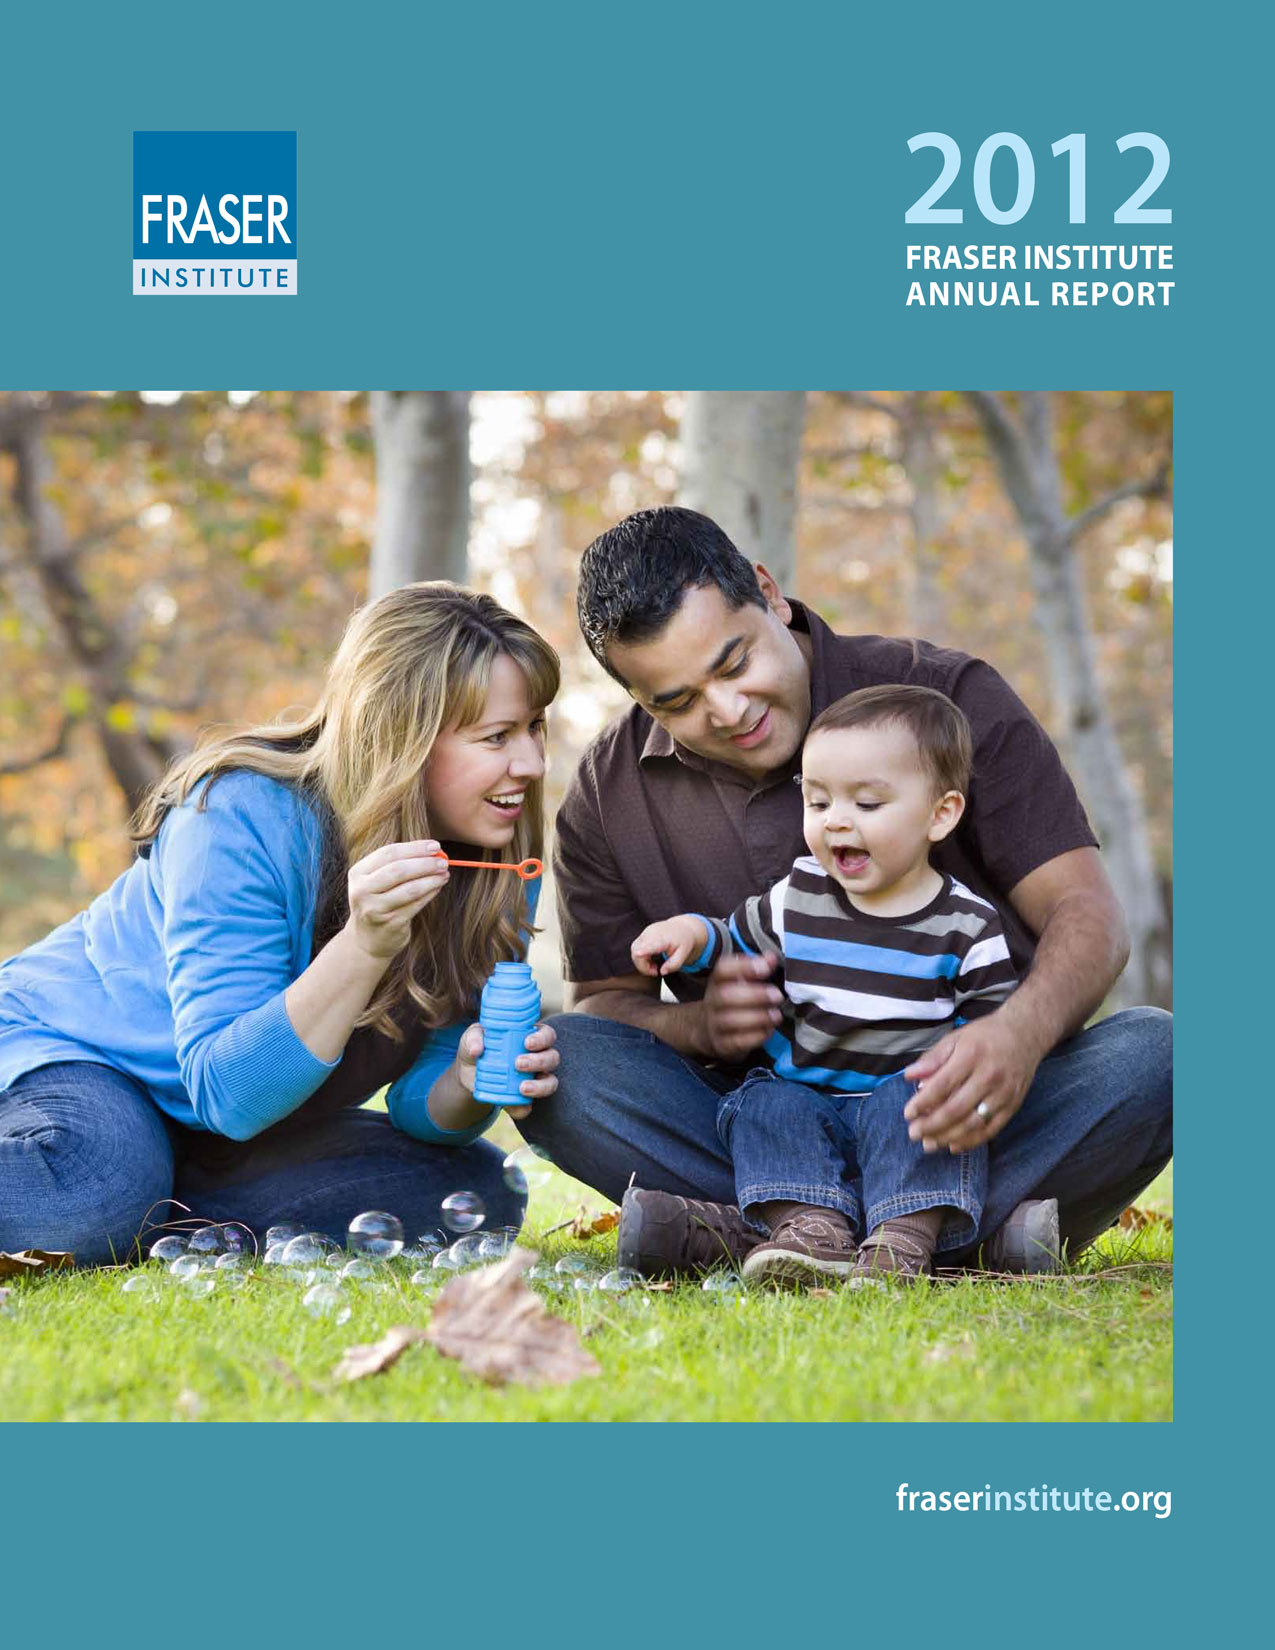 Fraser Institute Annual Report 2012